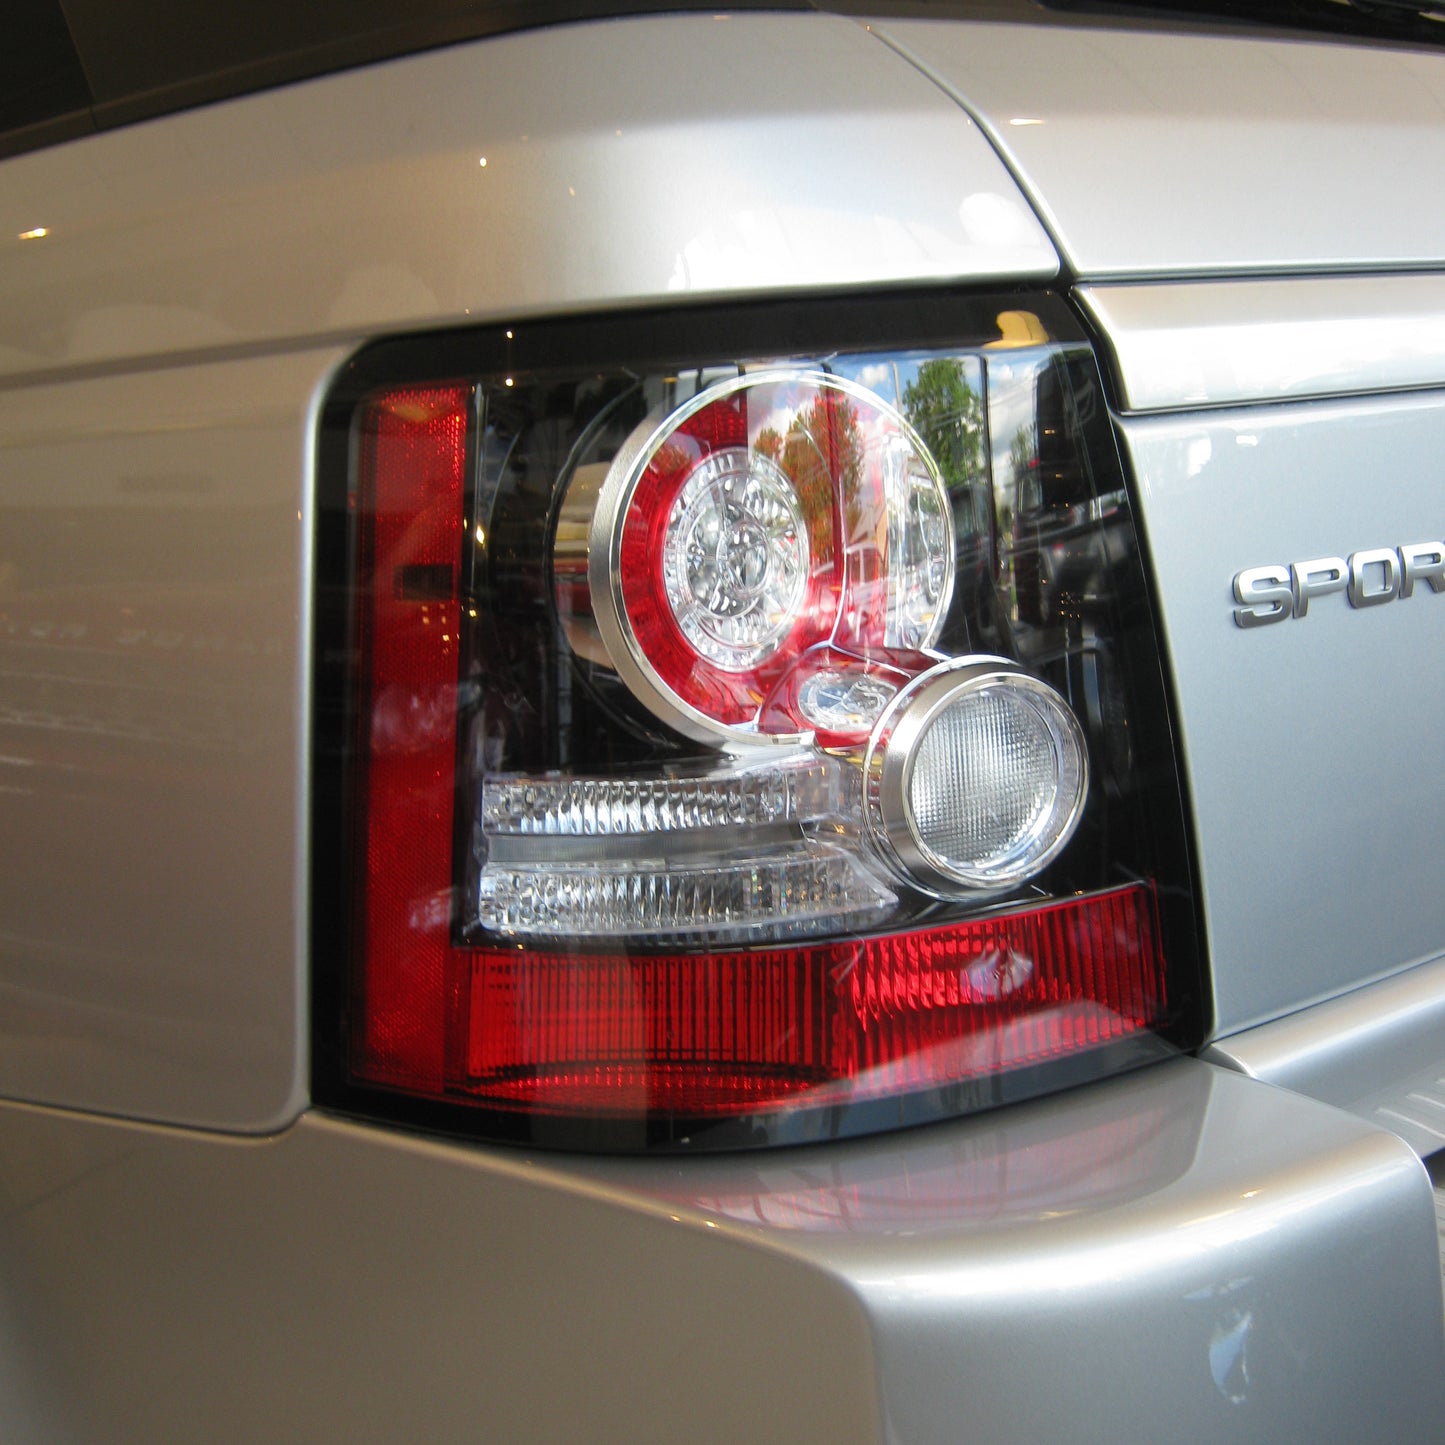 2012 Spec Rear LED Light Kit (includes reisistor looms) for Range Rover Sport L320 2005-09 - Aftermarket